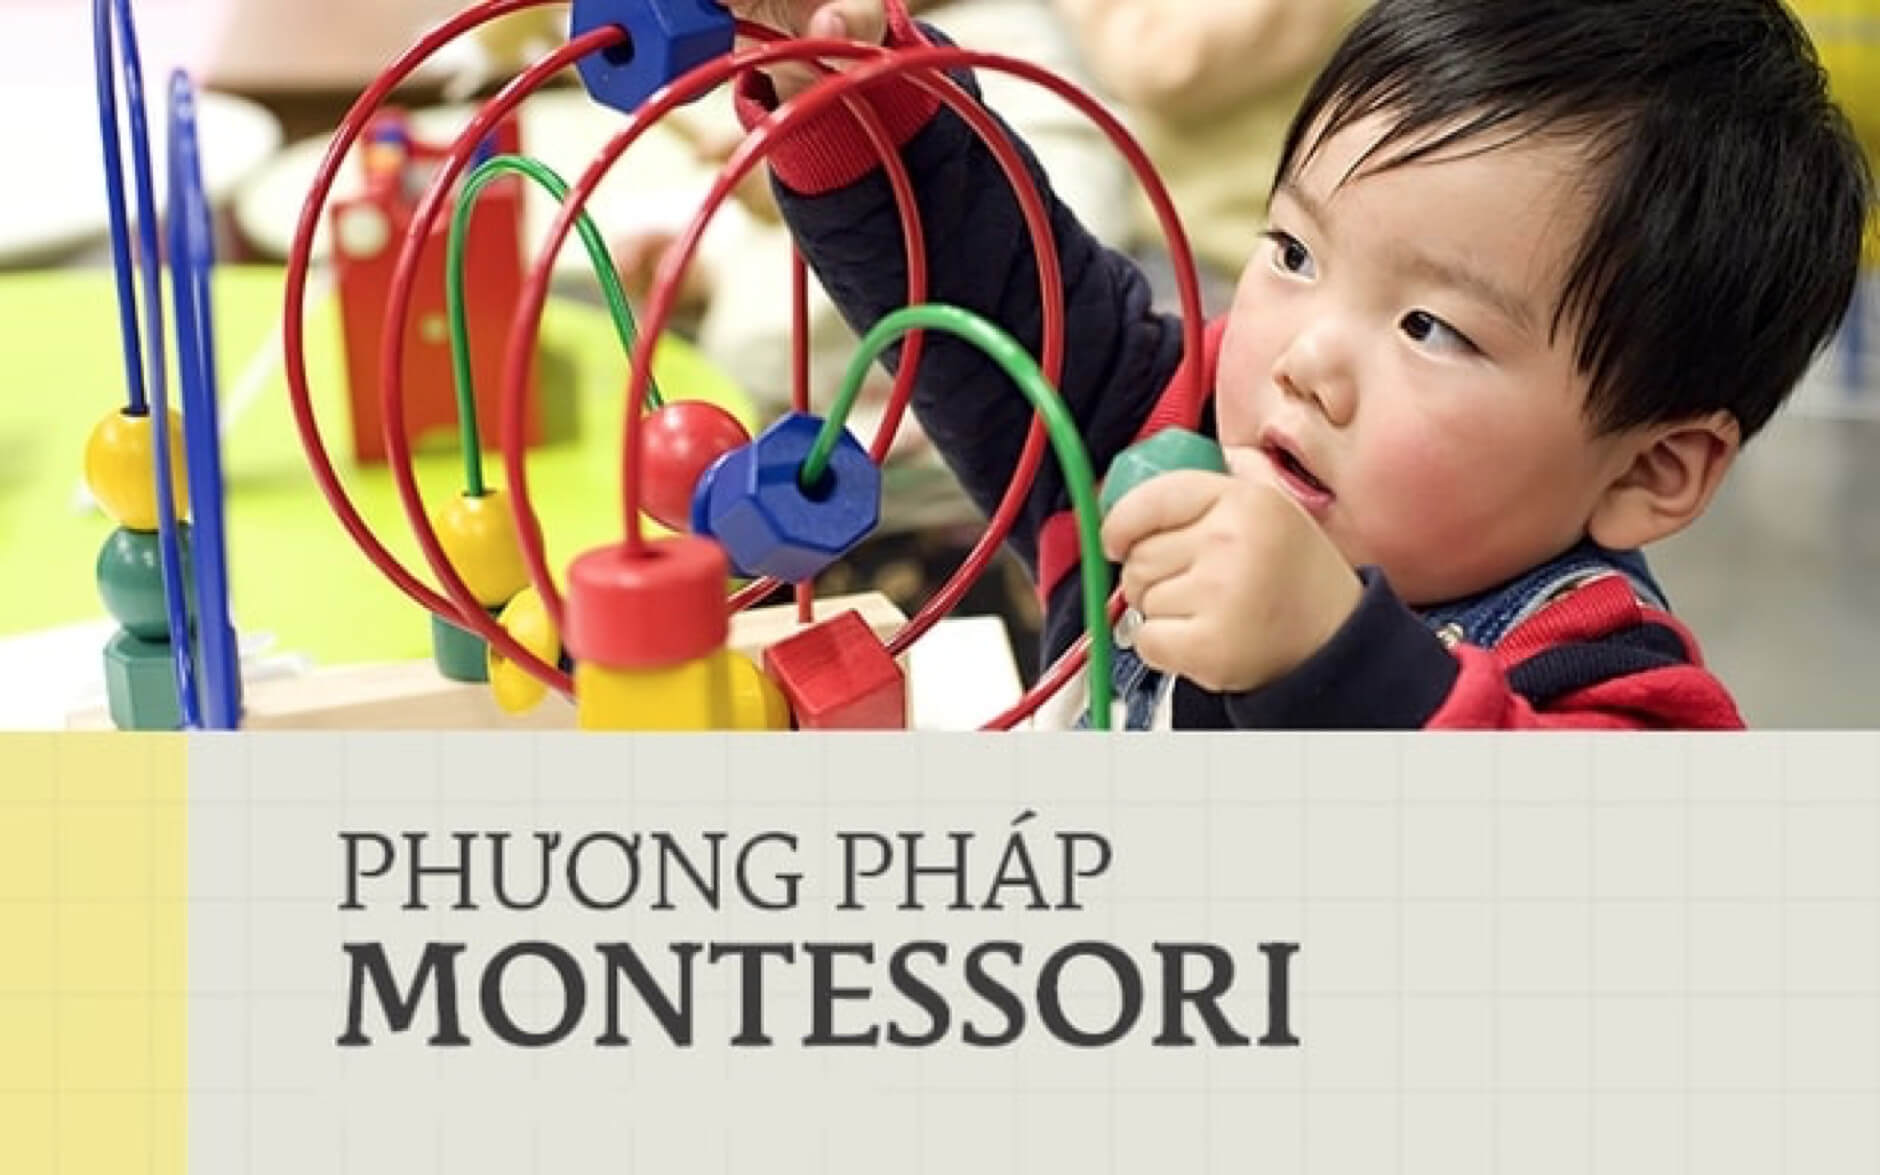 Dạy con theo phương pháp Montessori - lựa chọn của nhiều gia đình